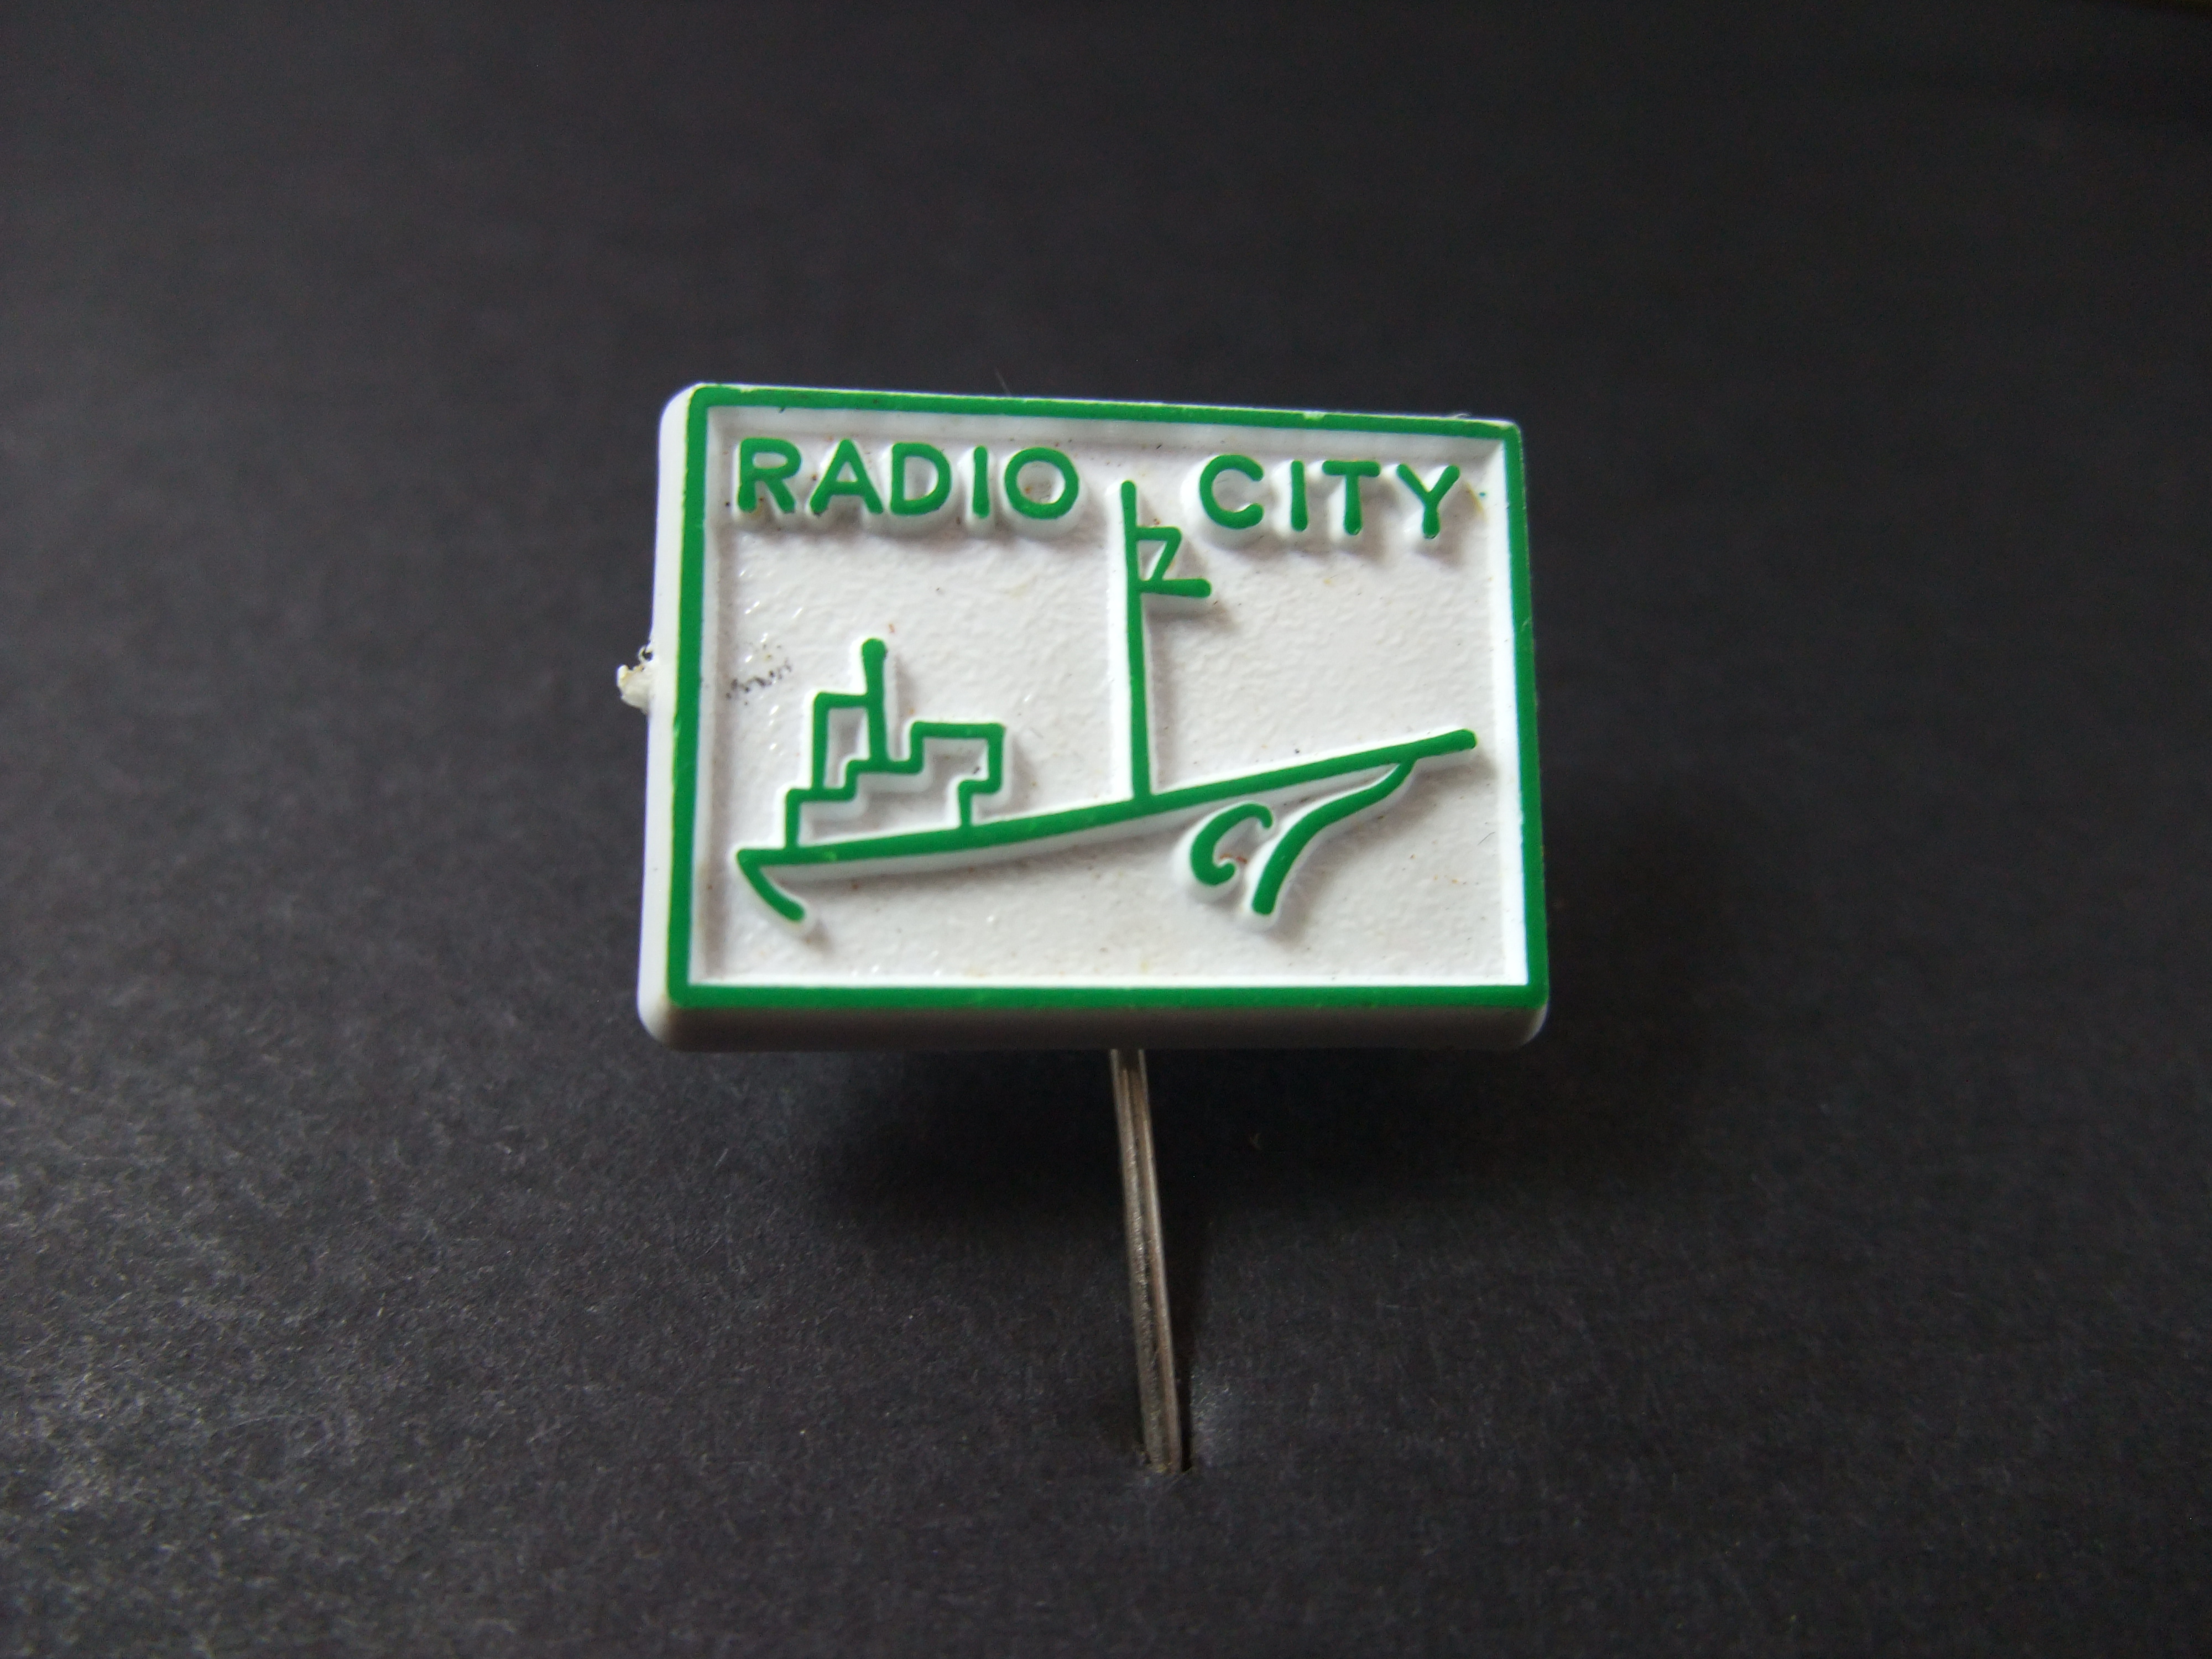 Radio City Britse zeezender jaren 60, (groen)